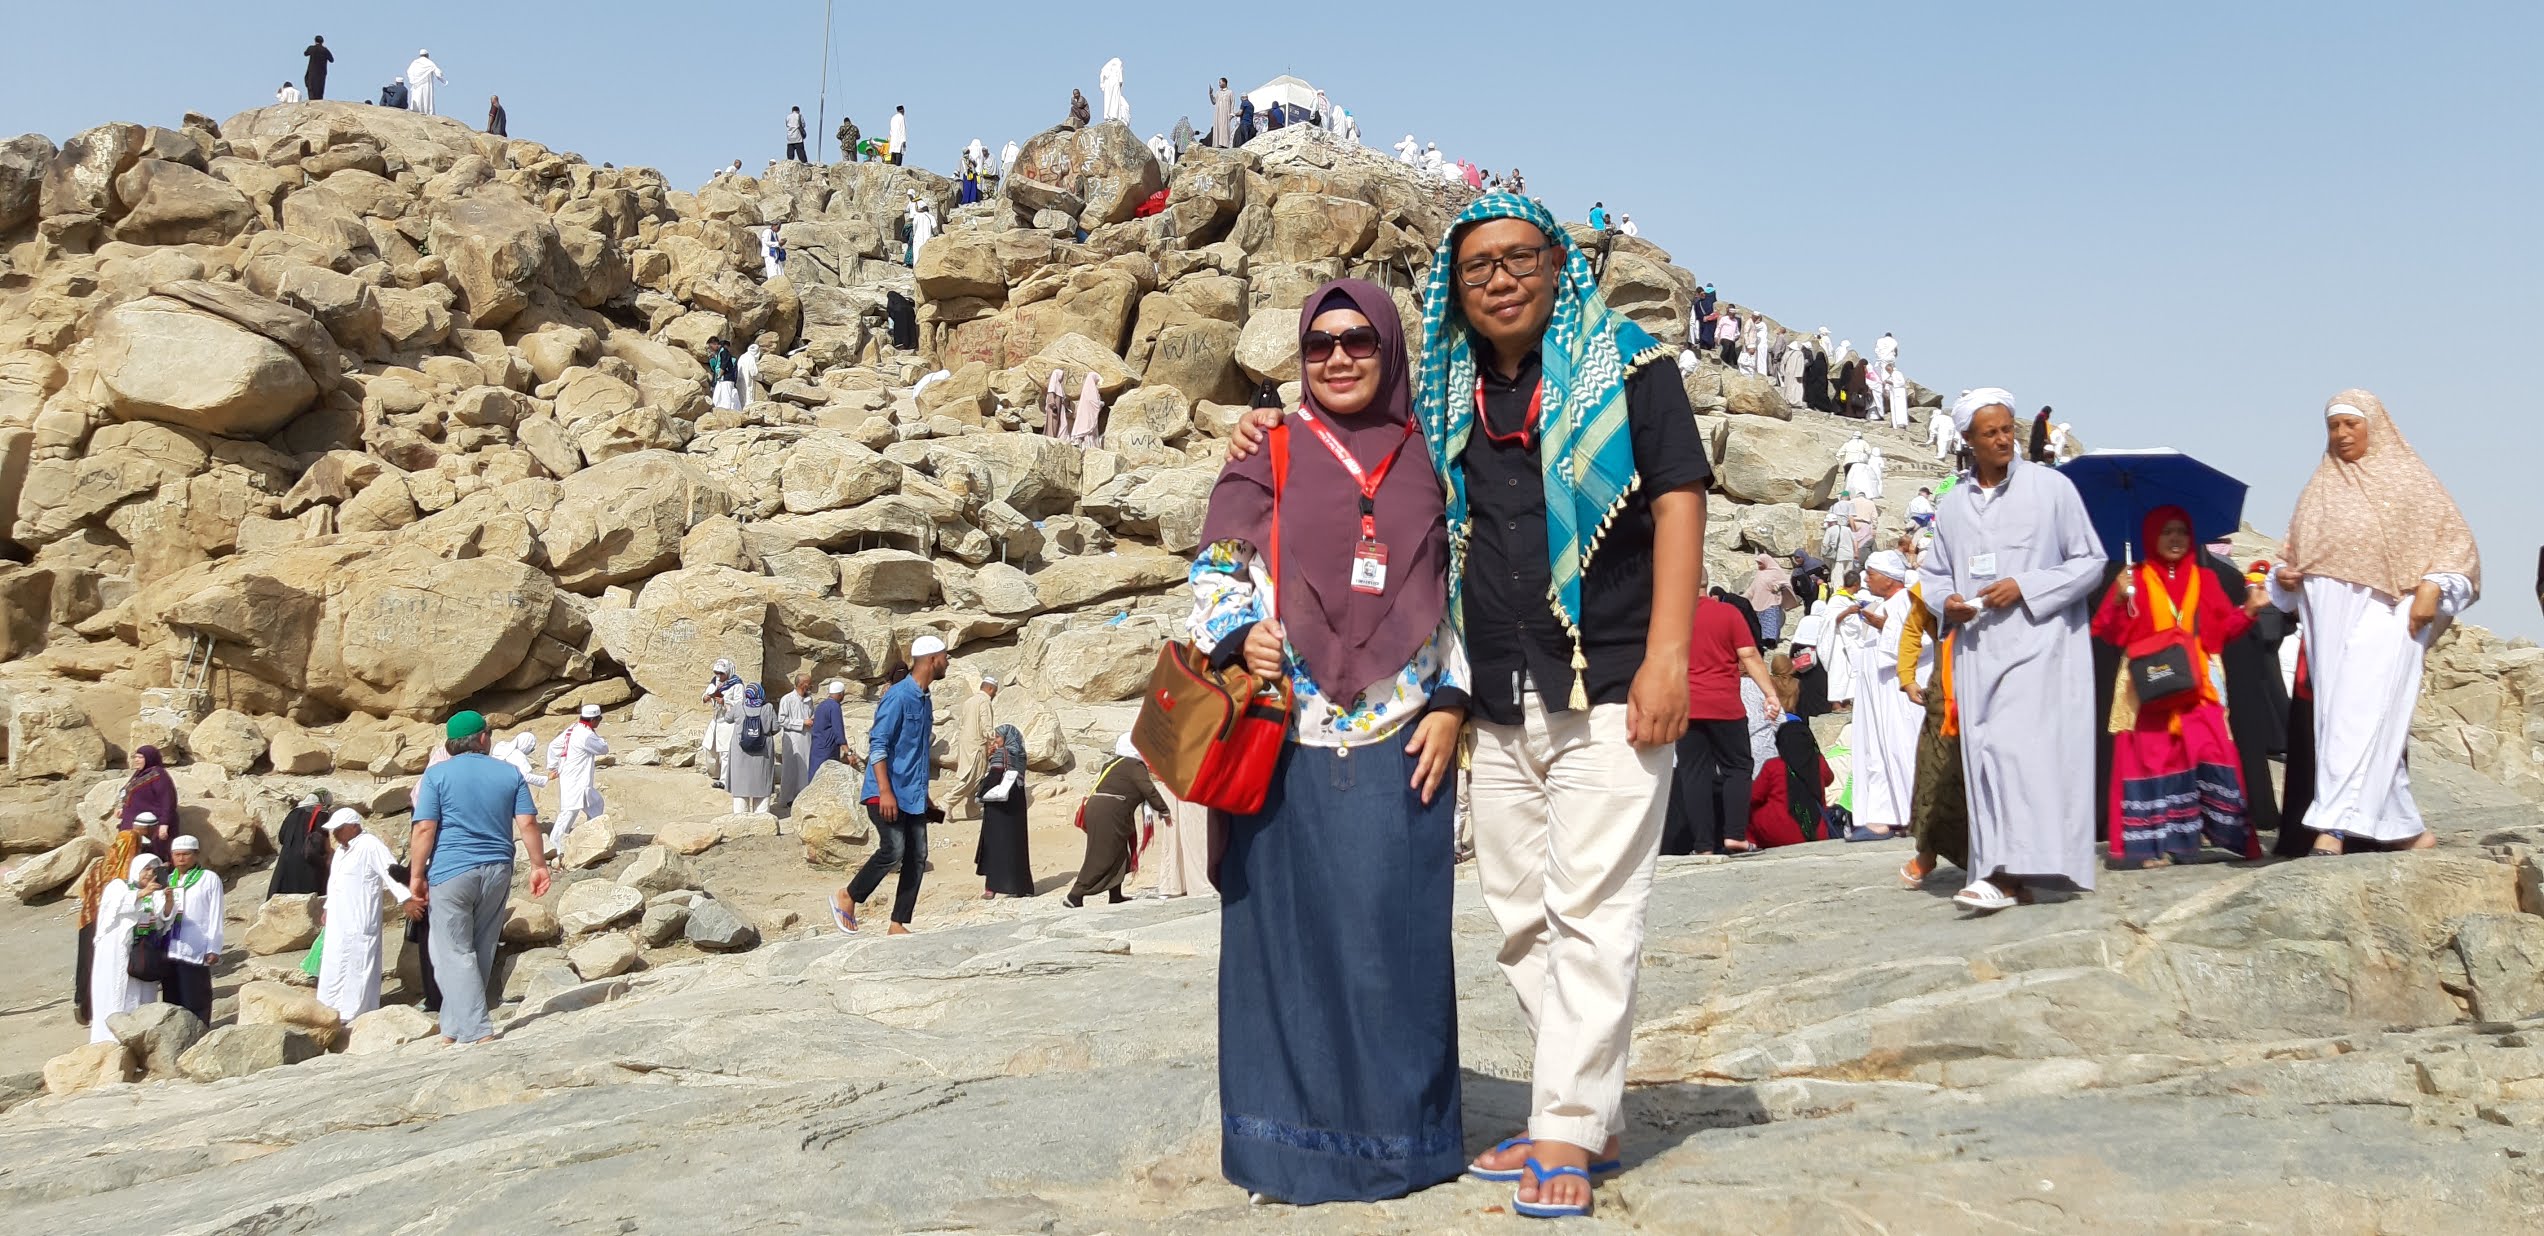 berkunjung ke jabal rahmah bukit kasih sayang di padang arafah umroh nurul sufitri travel lifestyle blogger alhijaz indowisata arab saudi review